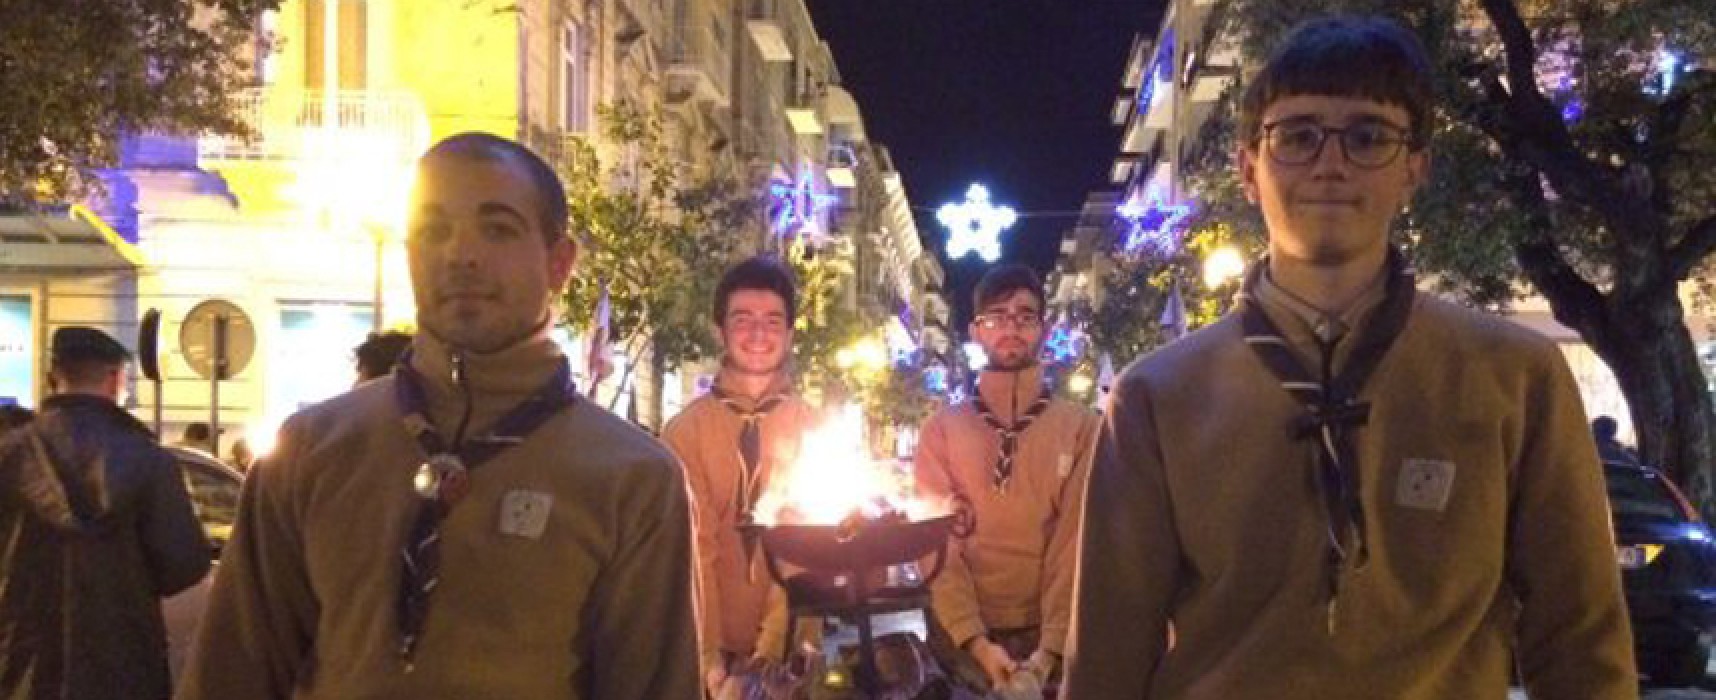 Stasera il Gruppo Scout porta la Luce della Pace nelle strade della città